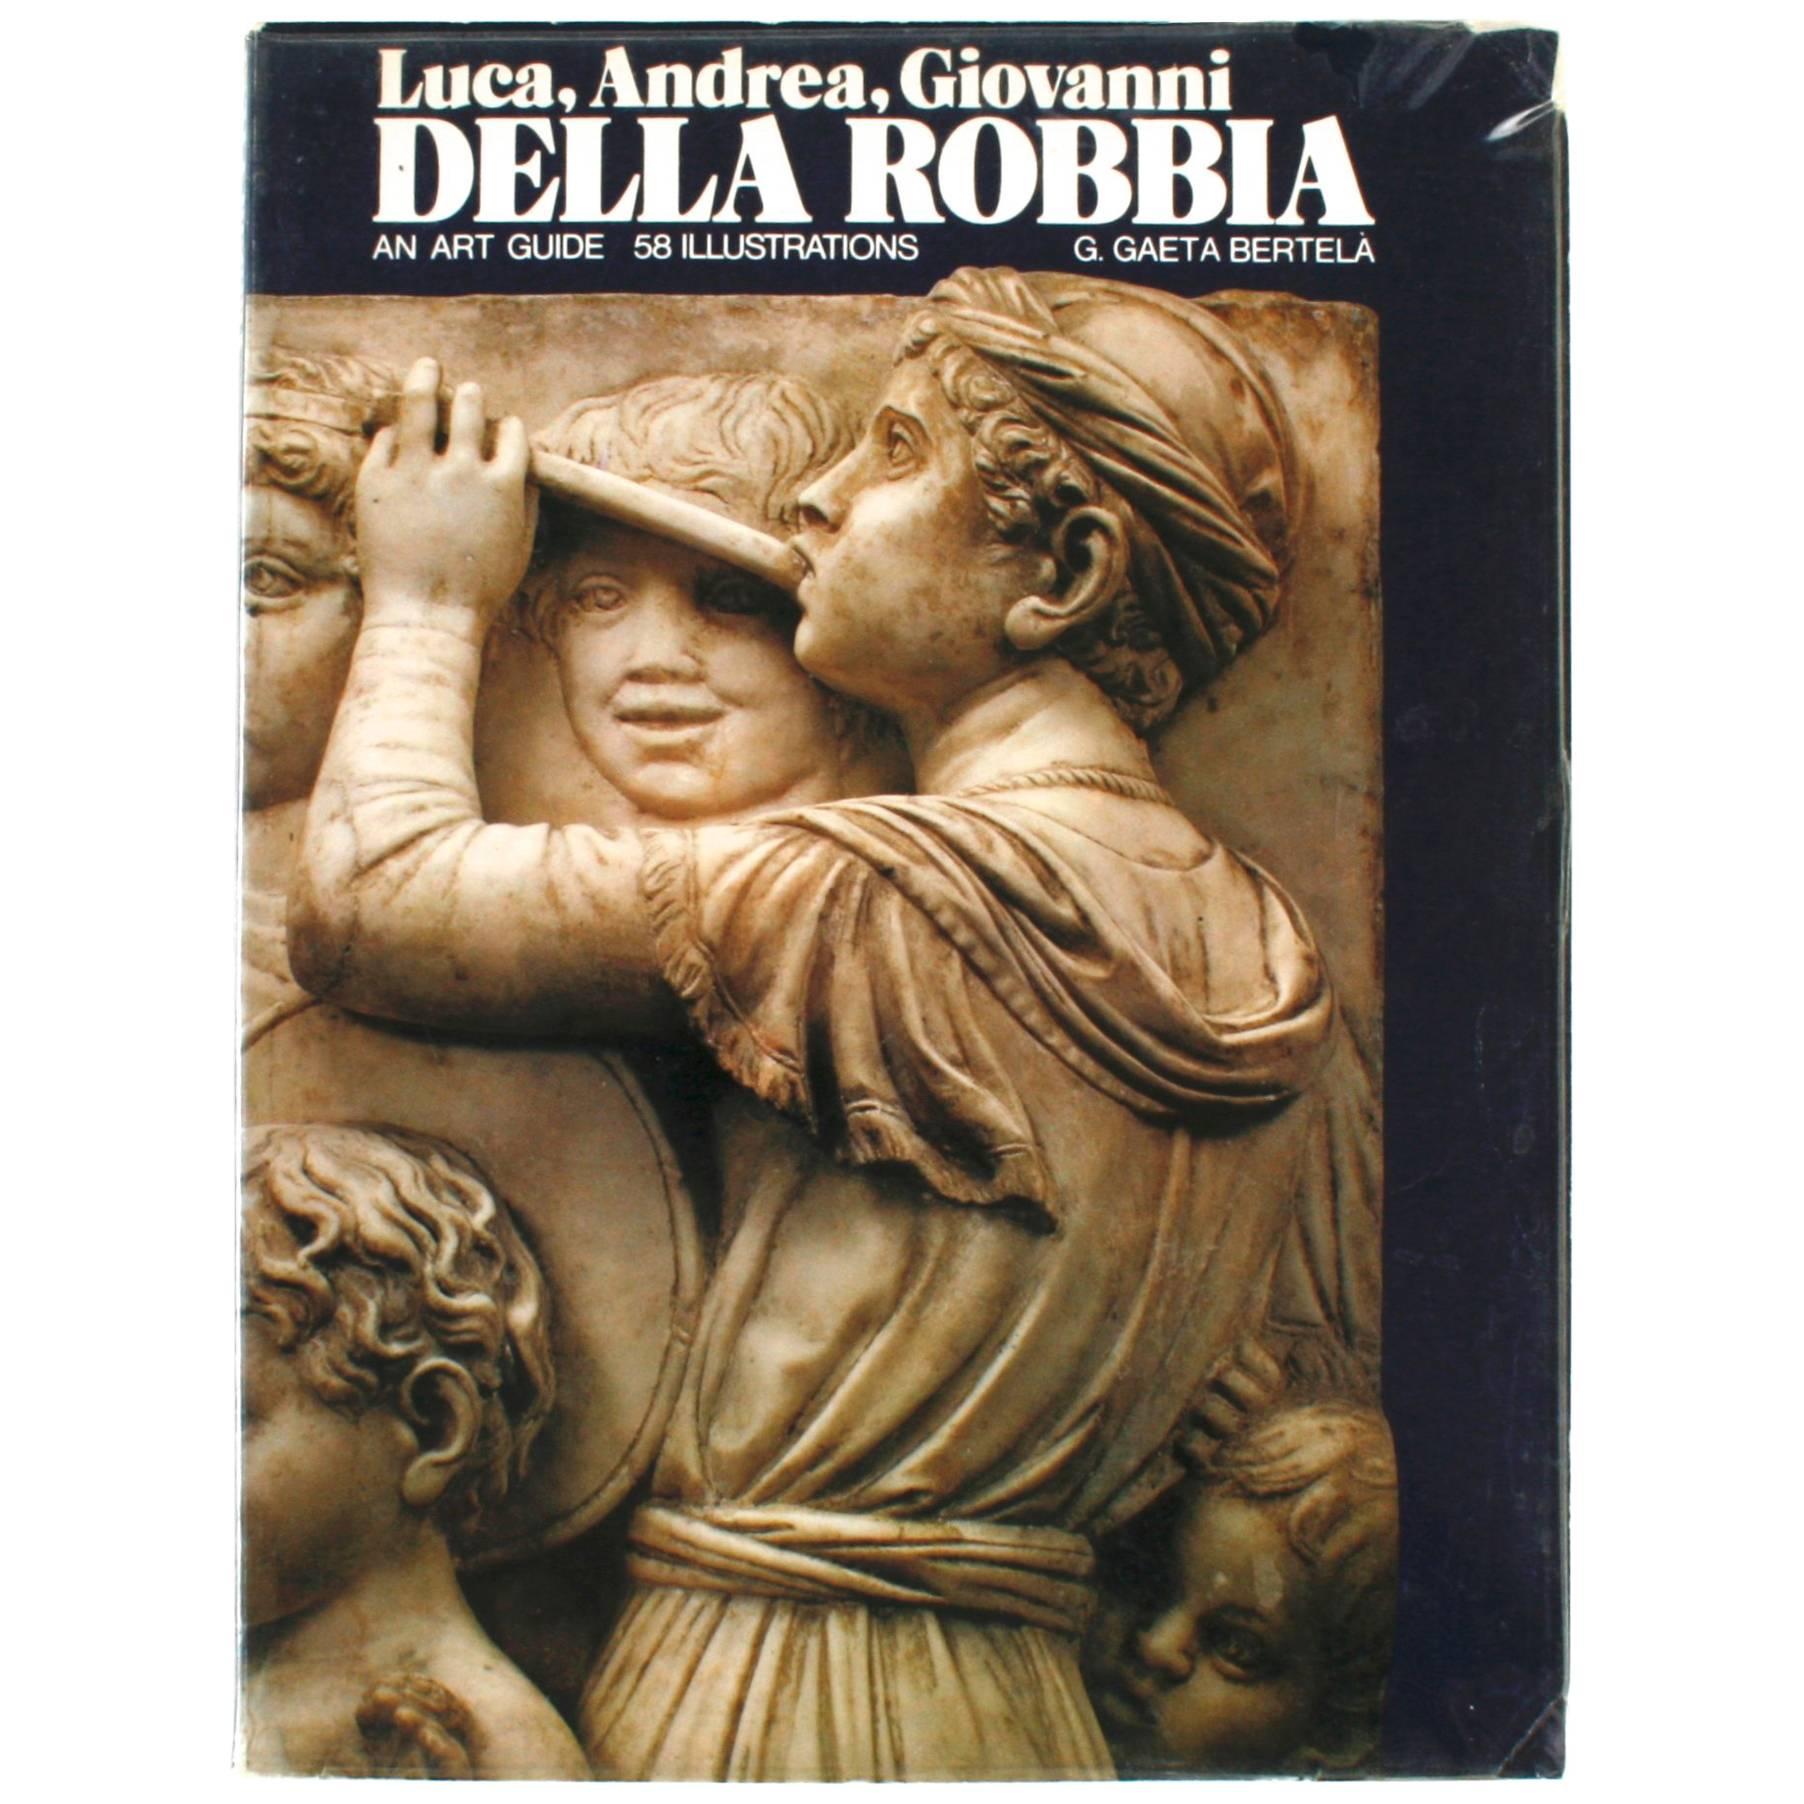 Luca, Andrea, Giovanni Della Robbia, An Art Guide by F. Gaeta Bertela